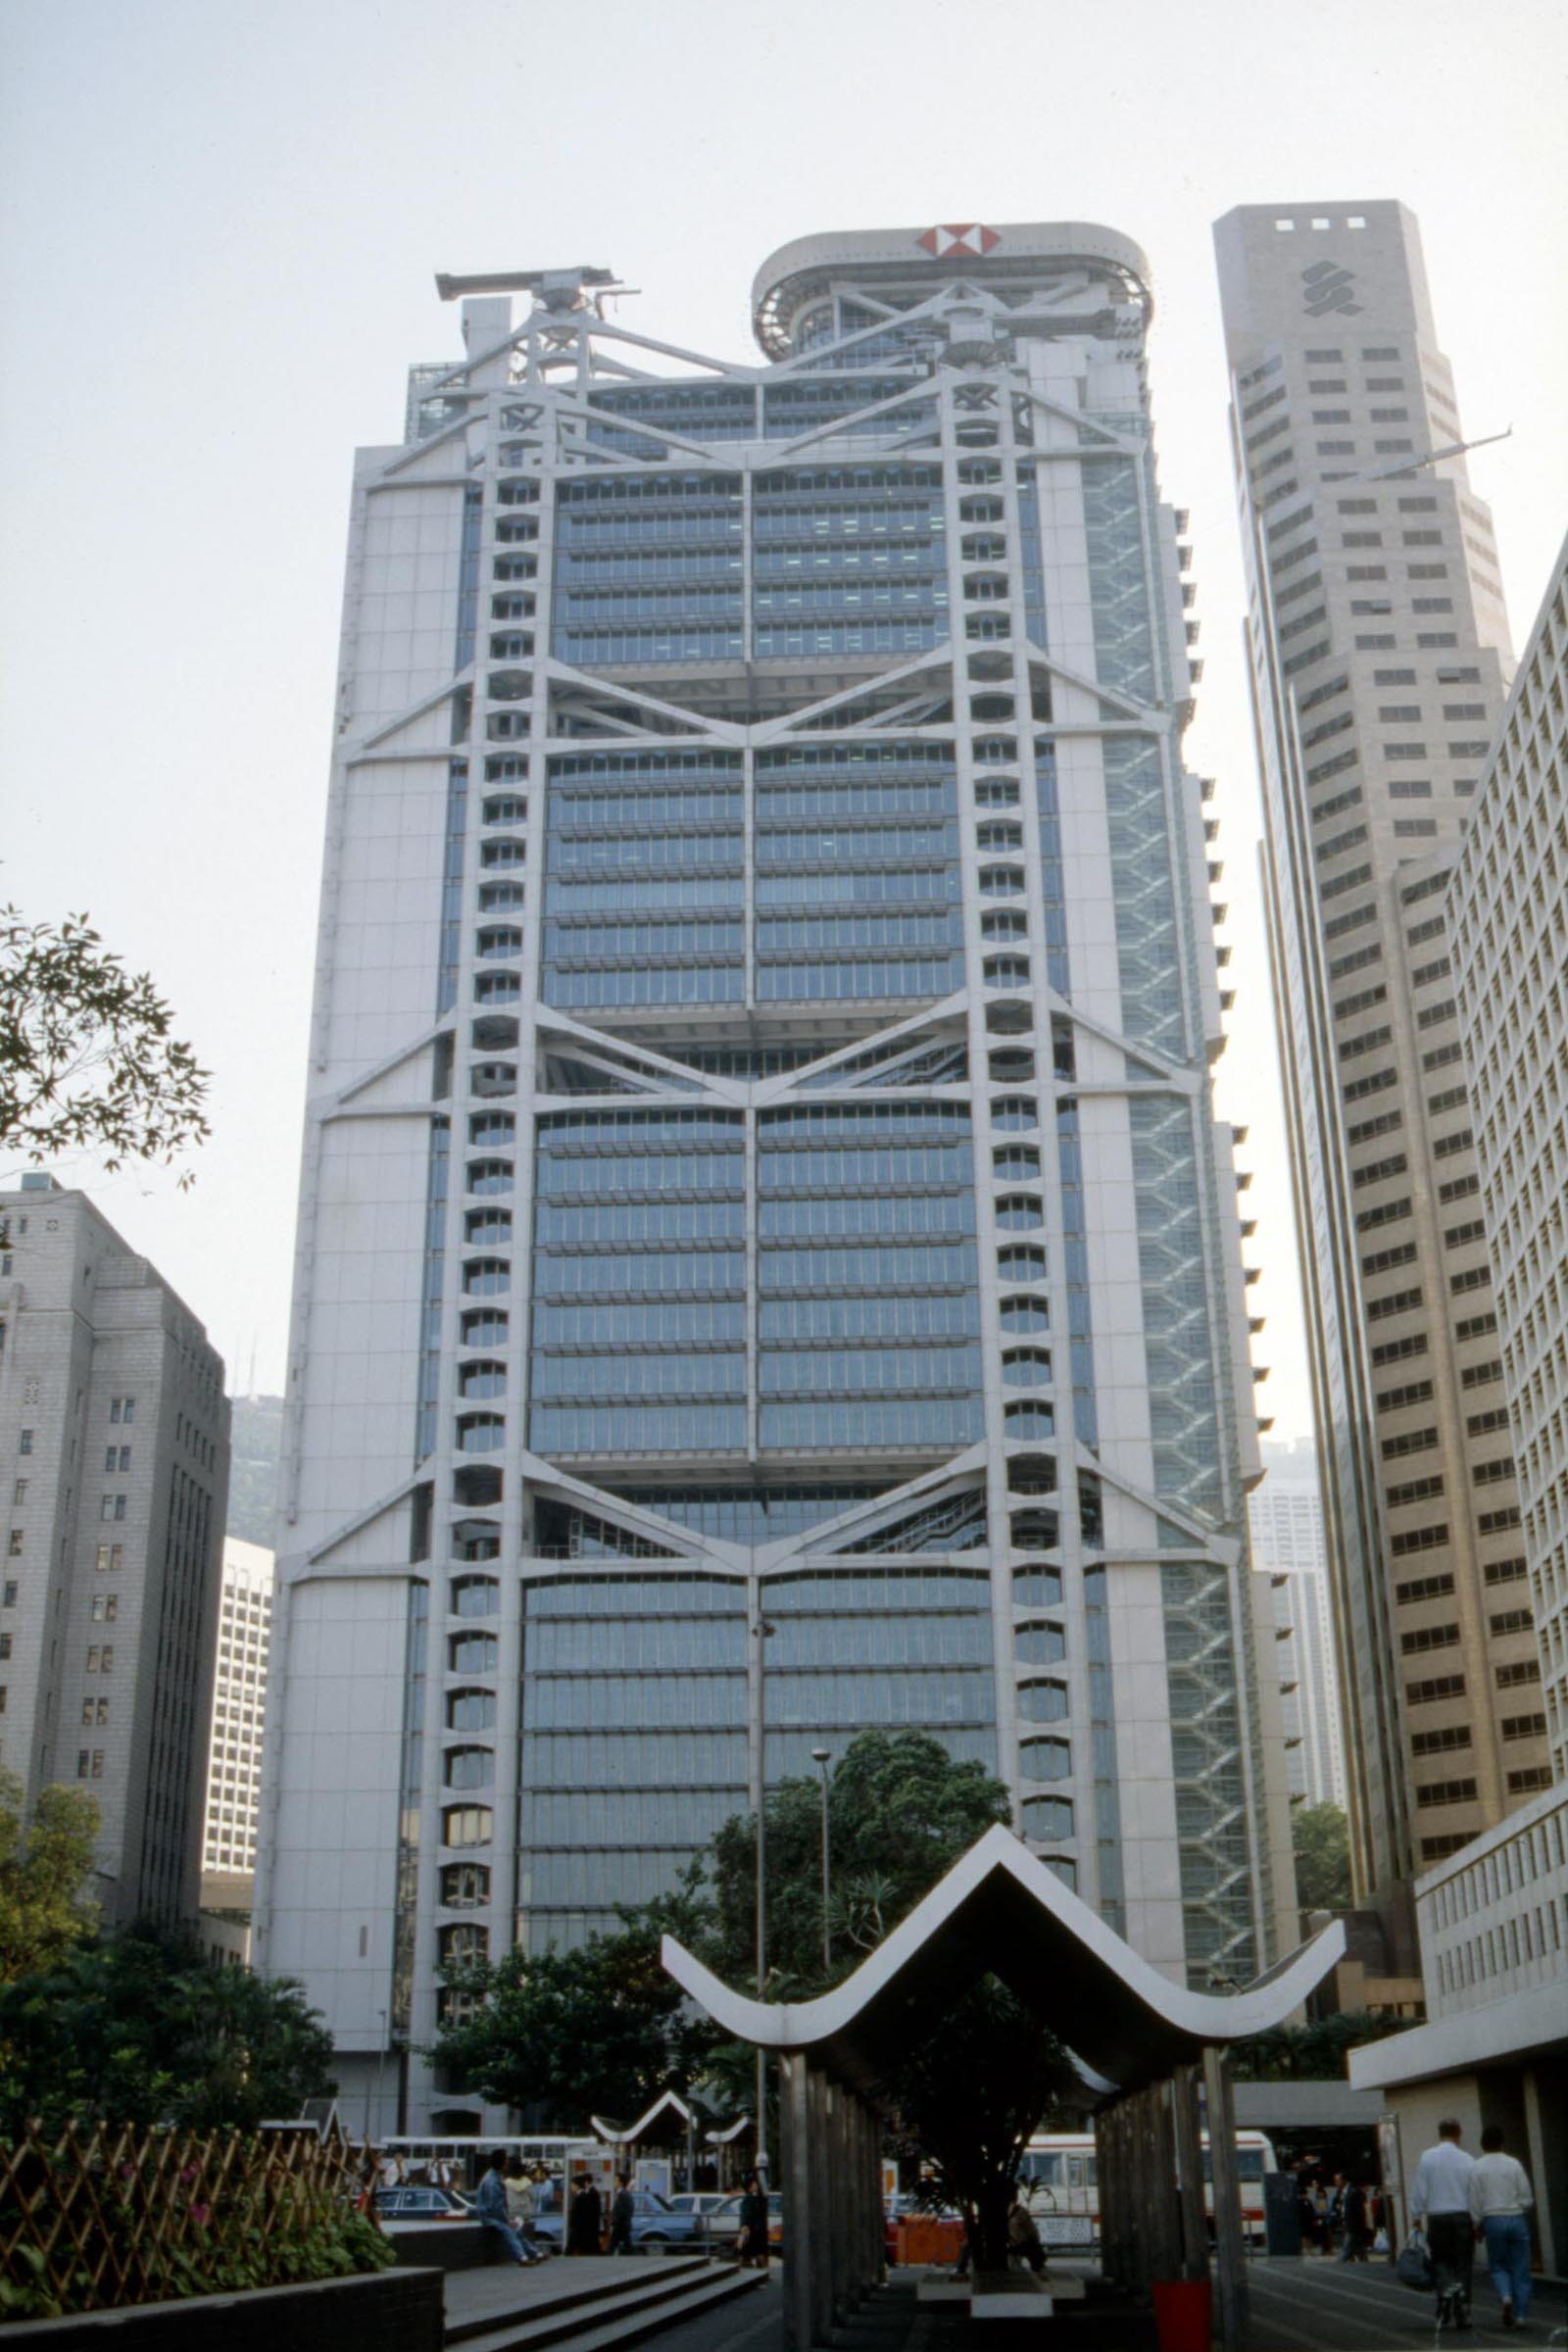 Hongkong and Shanghai Banking Corporation Main Buildings